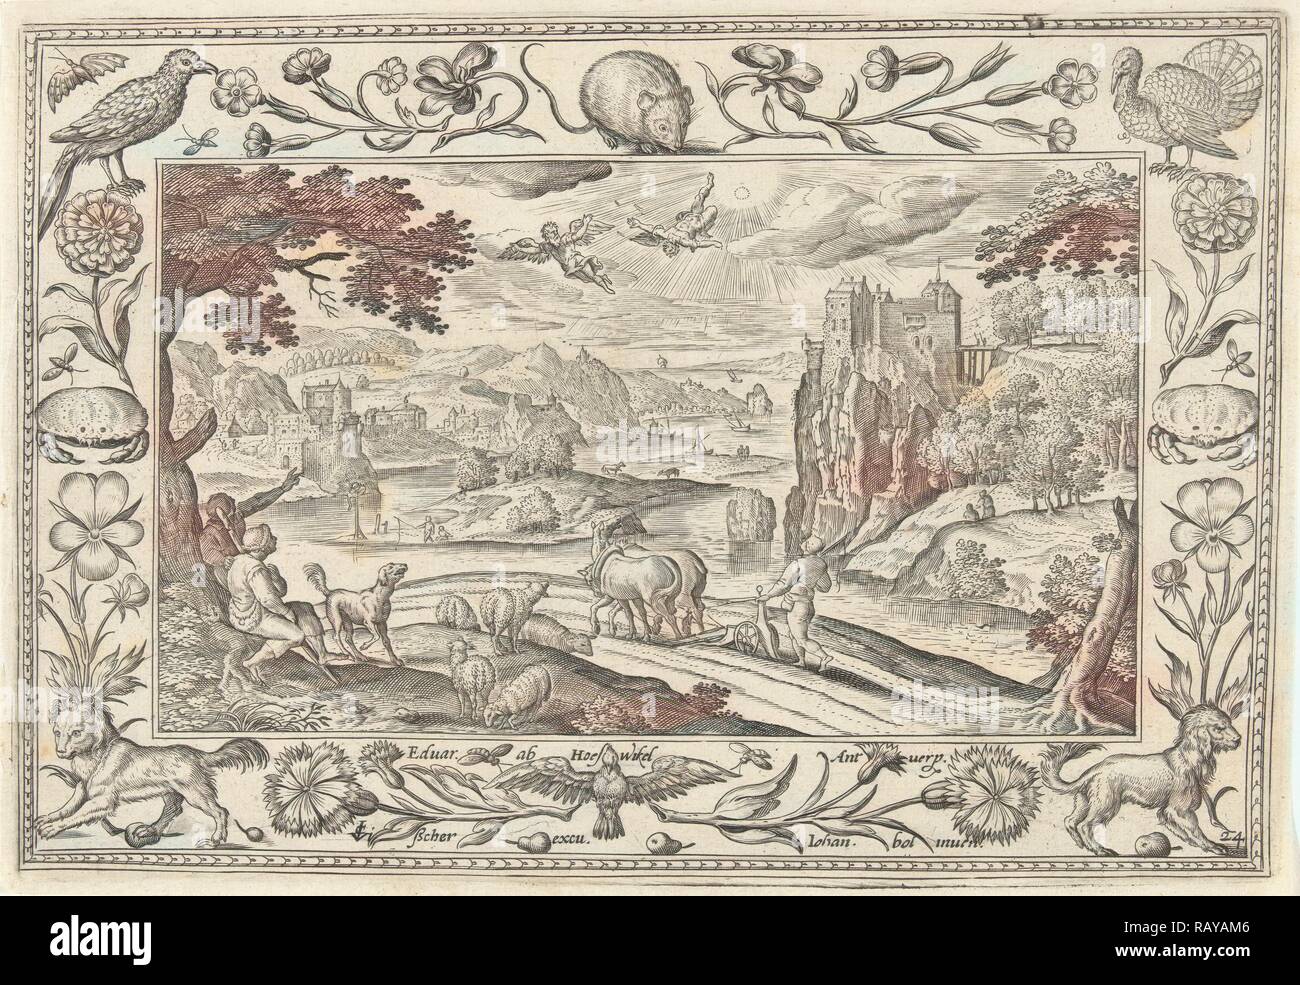 Fall of Icarus, Adriaen Collaert, Claes Jansz. Visscher (II), Eduwart van Hoeswinckel, 1584 - 1618. Reimagined Stock Photo